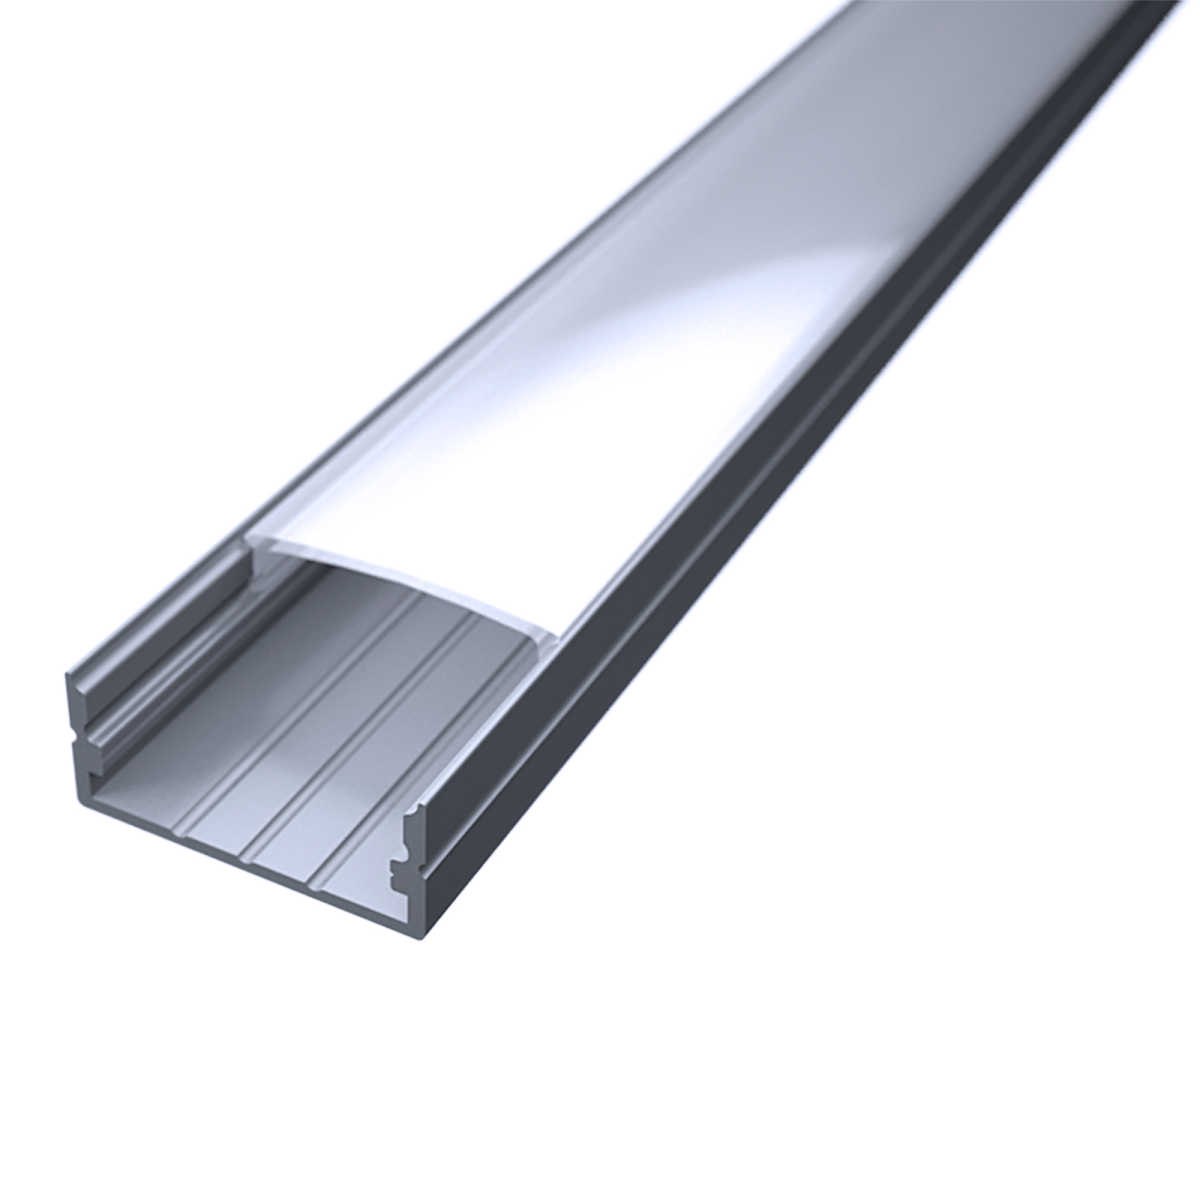 LED Flachprofil "Slim-Line max" | Abdeckung diffus | Zuschnitt auf 60cm |